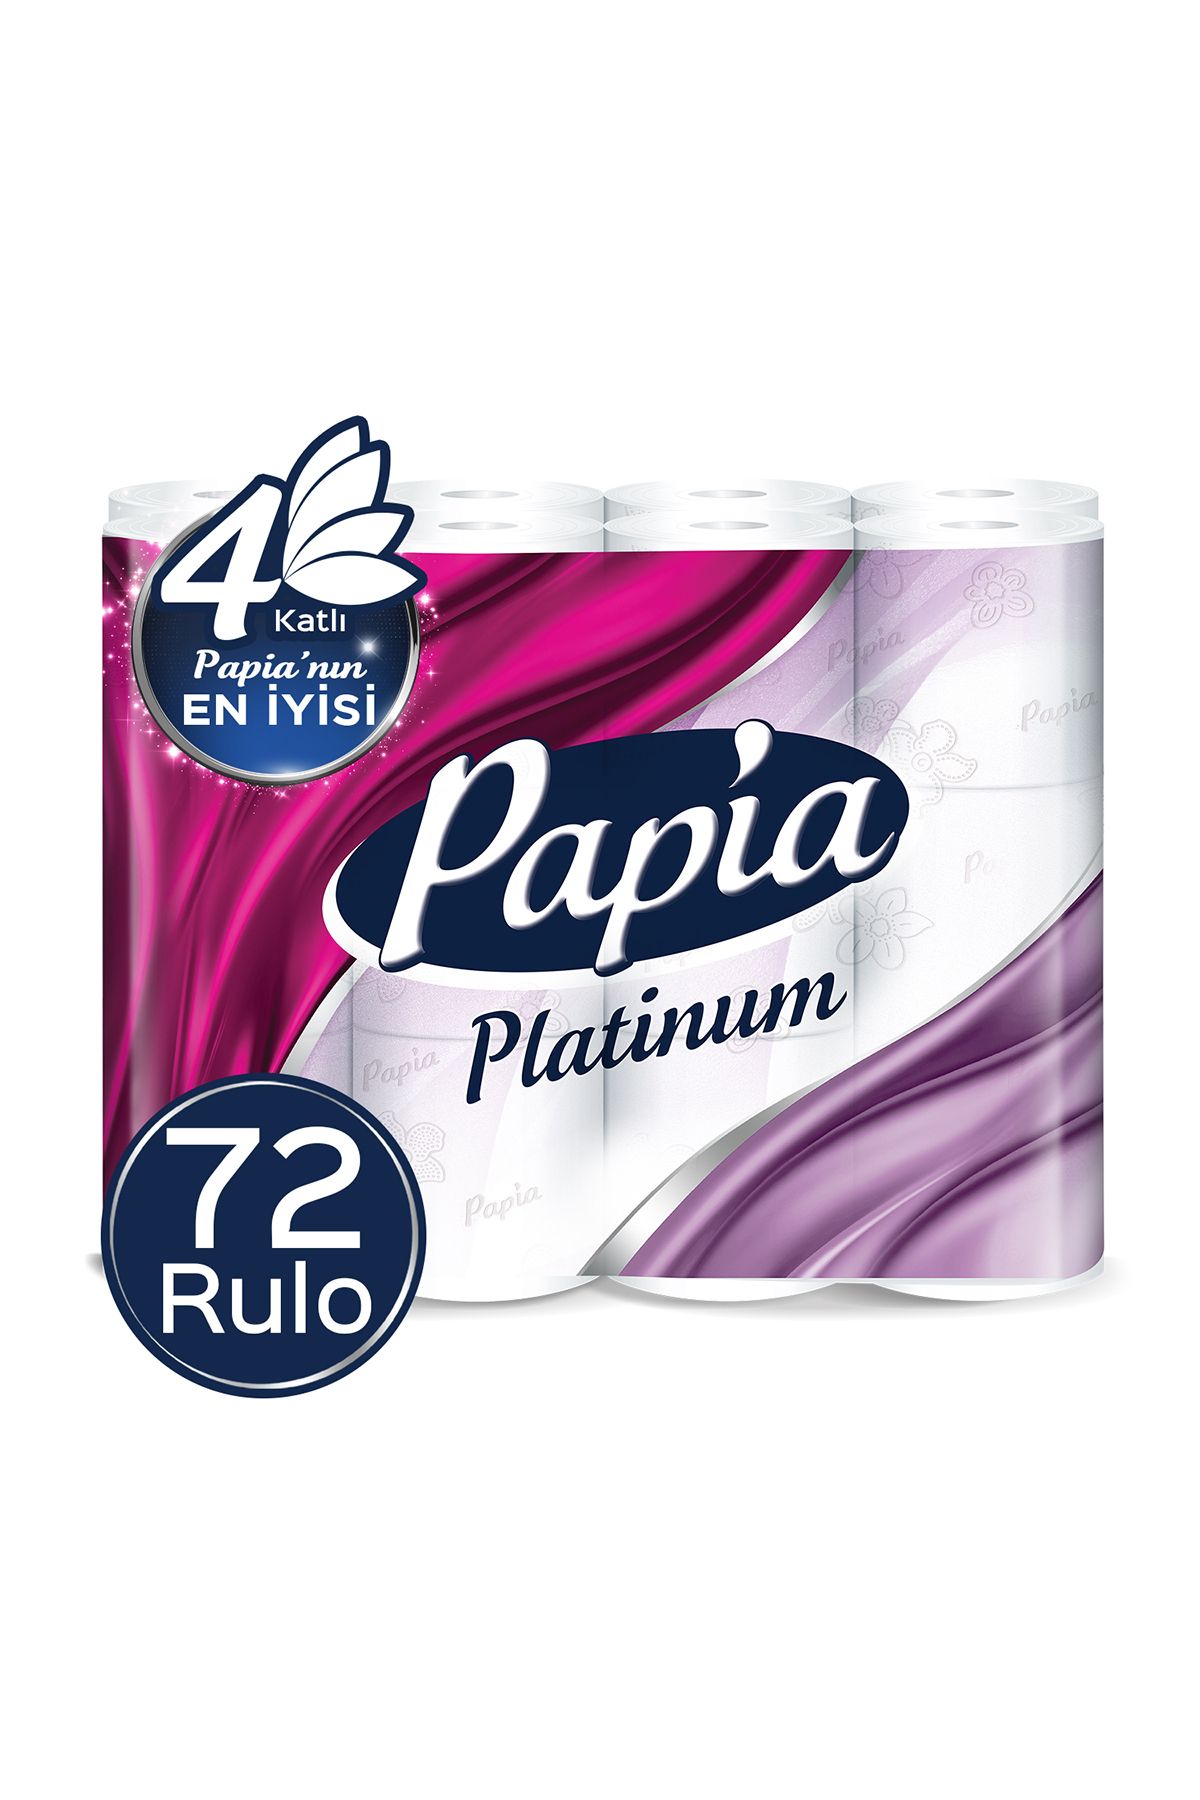 Papia Platinum Tuvalet Kağıdı 72 Rulo (24 RULO X 3 PAKET)